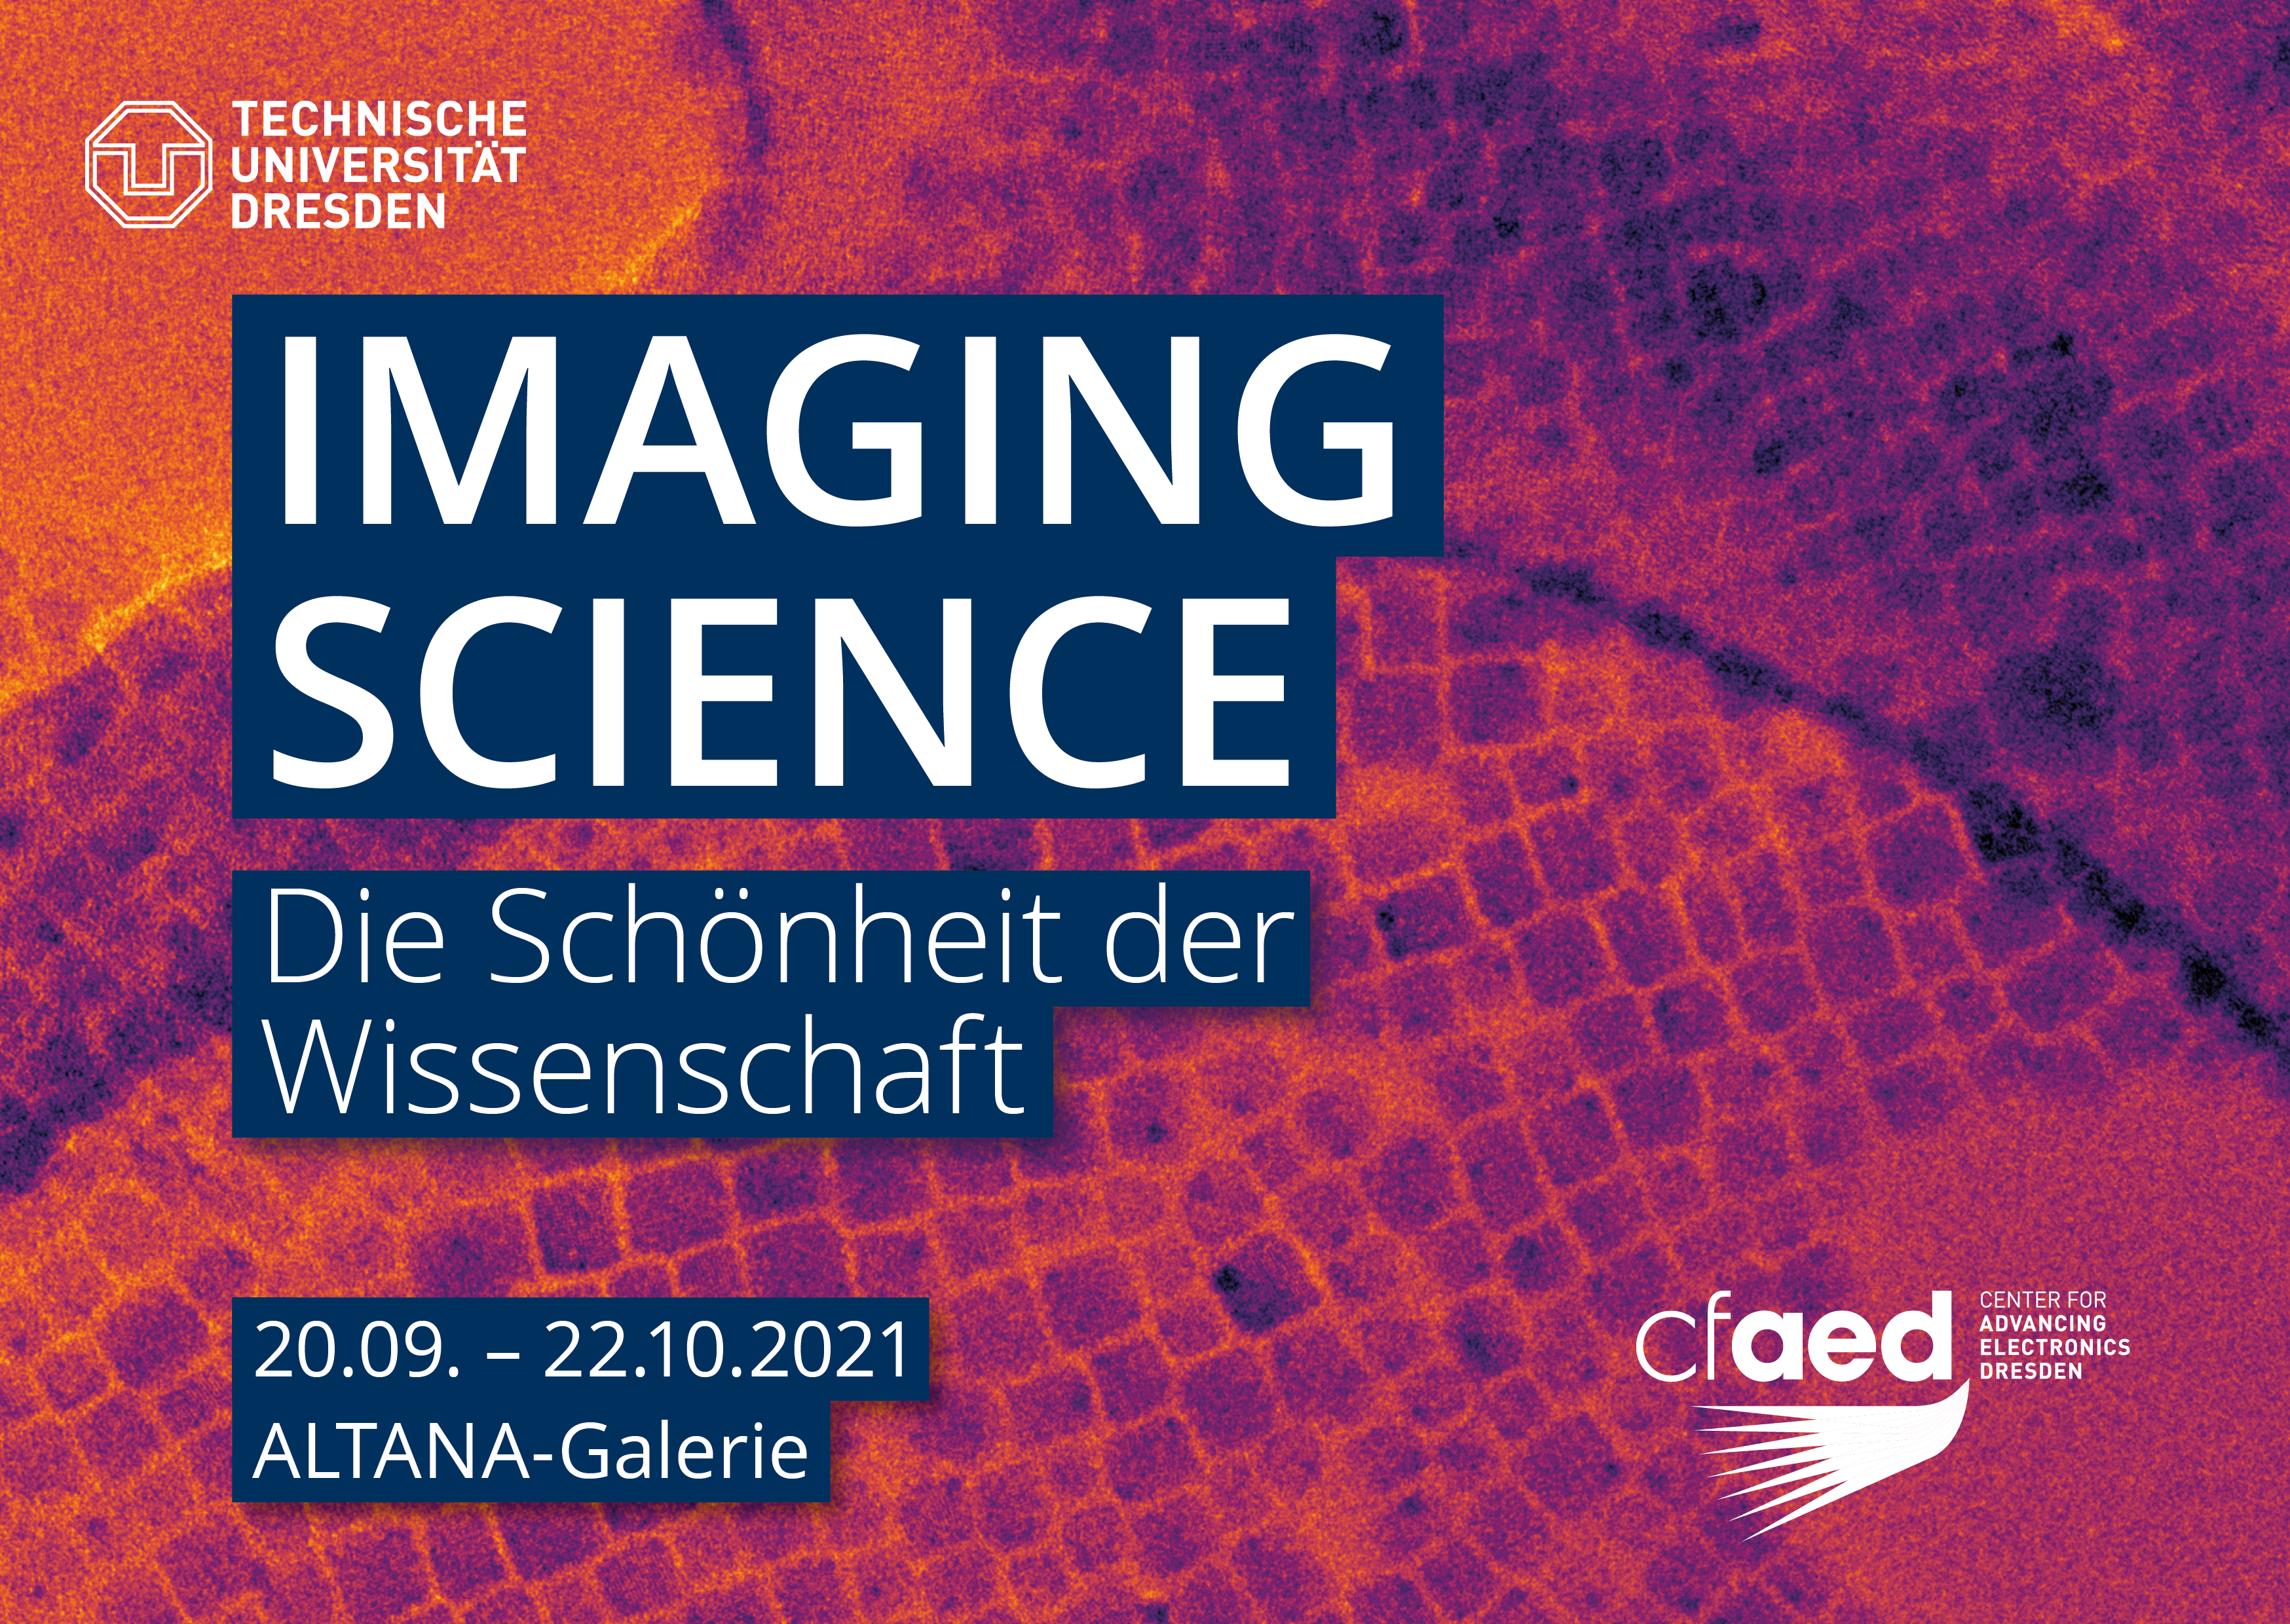 scientific image with text: Imaging Science. Die Schönheit der Wissenschaft.